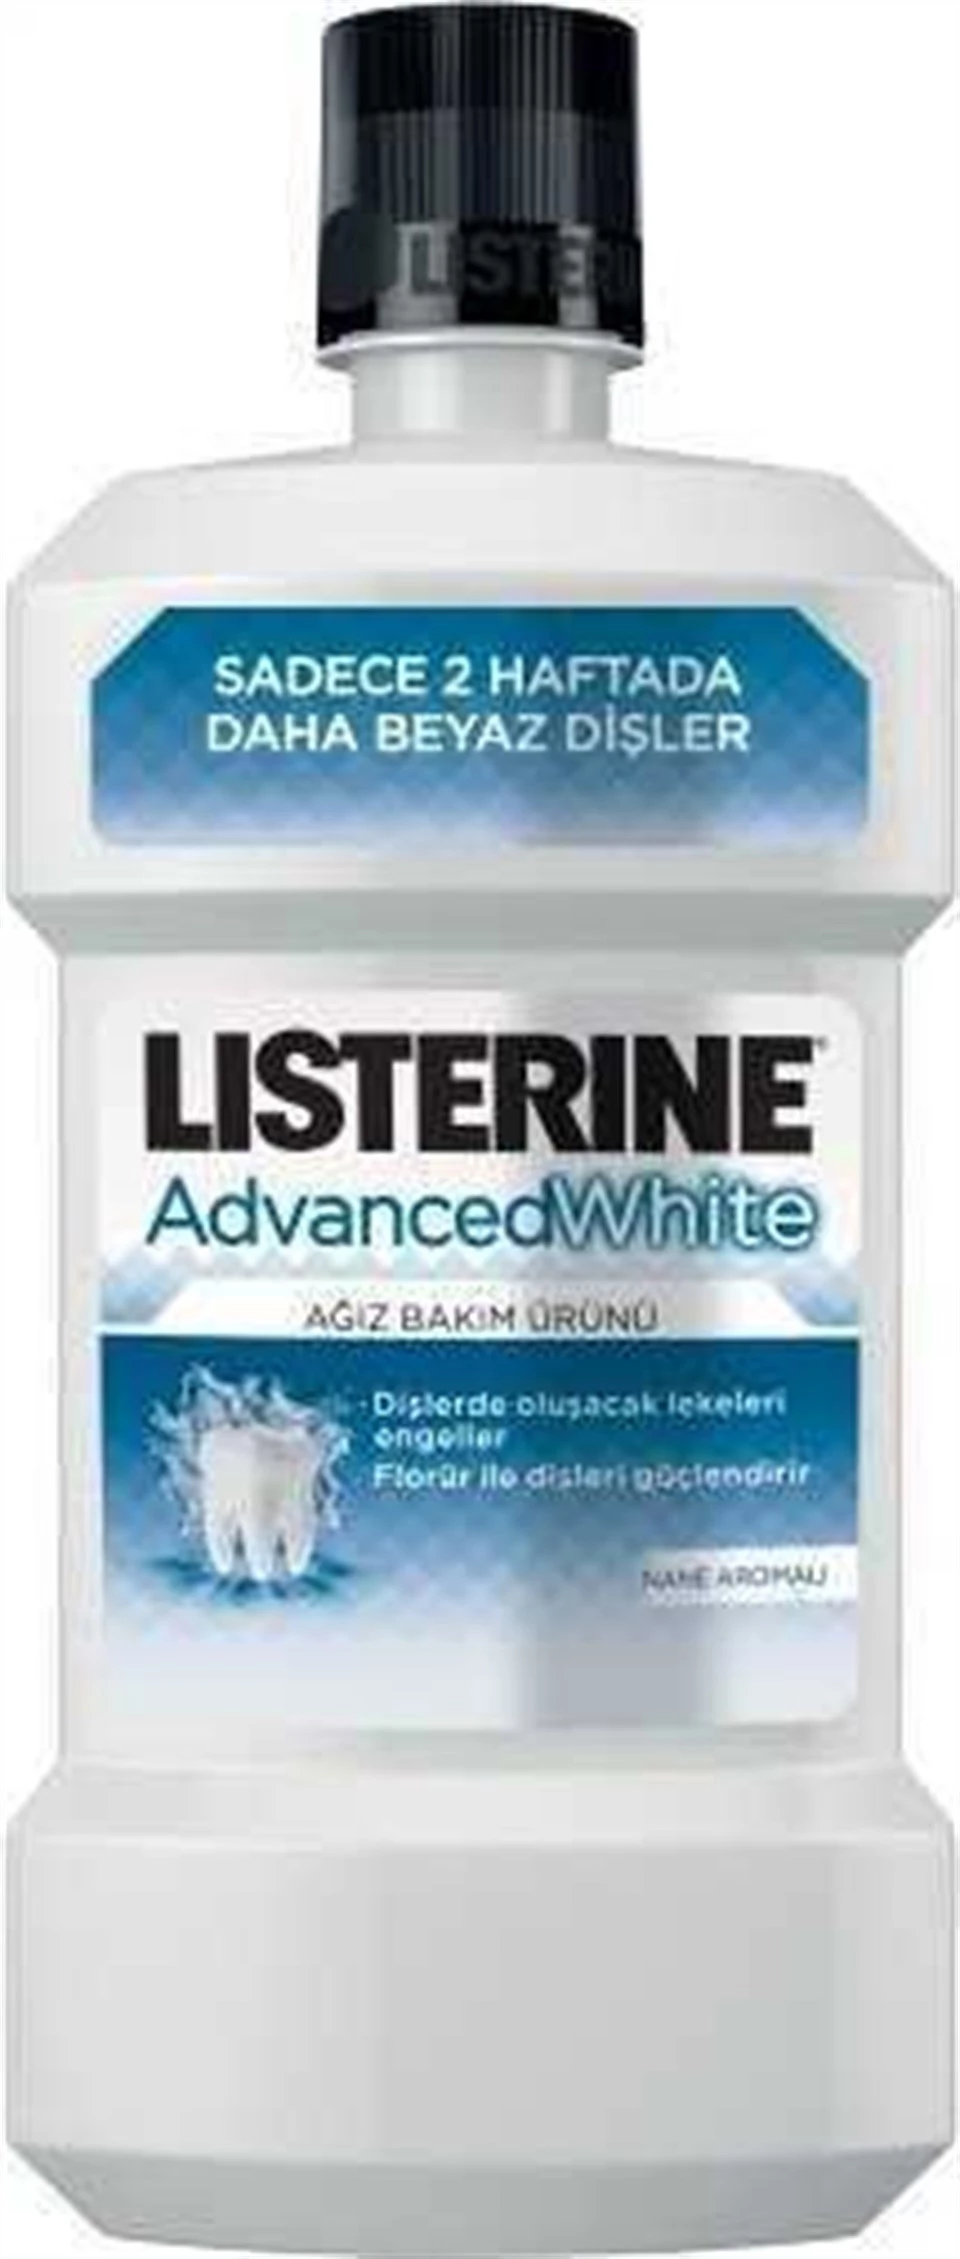 Listerine Advanced White Ağız Bakım Ürünü 500ml